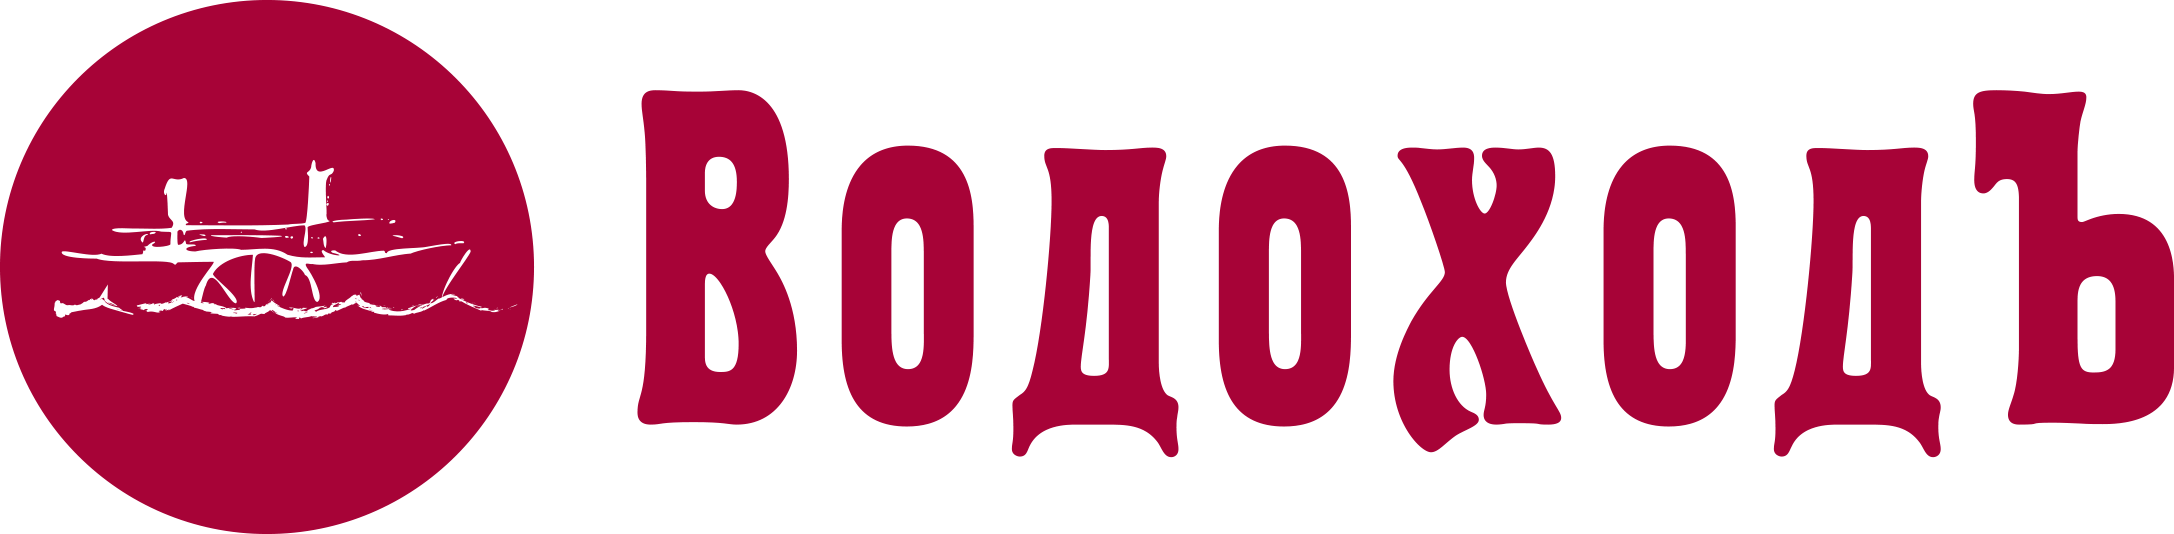 Ооо водоходъ. Водоход эмблема. Компания водоход лого. ВОДОХОДЪ Нижний Новгород логотип.